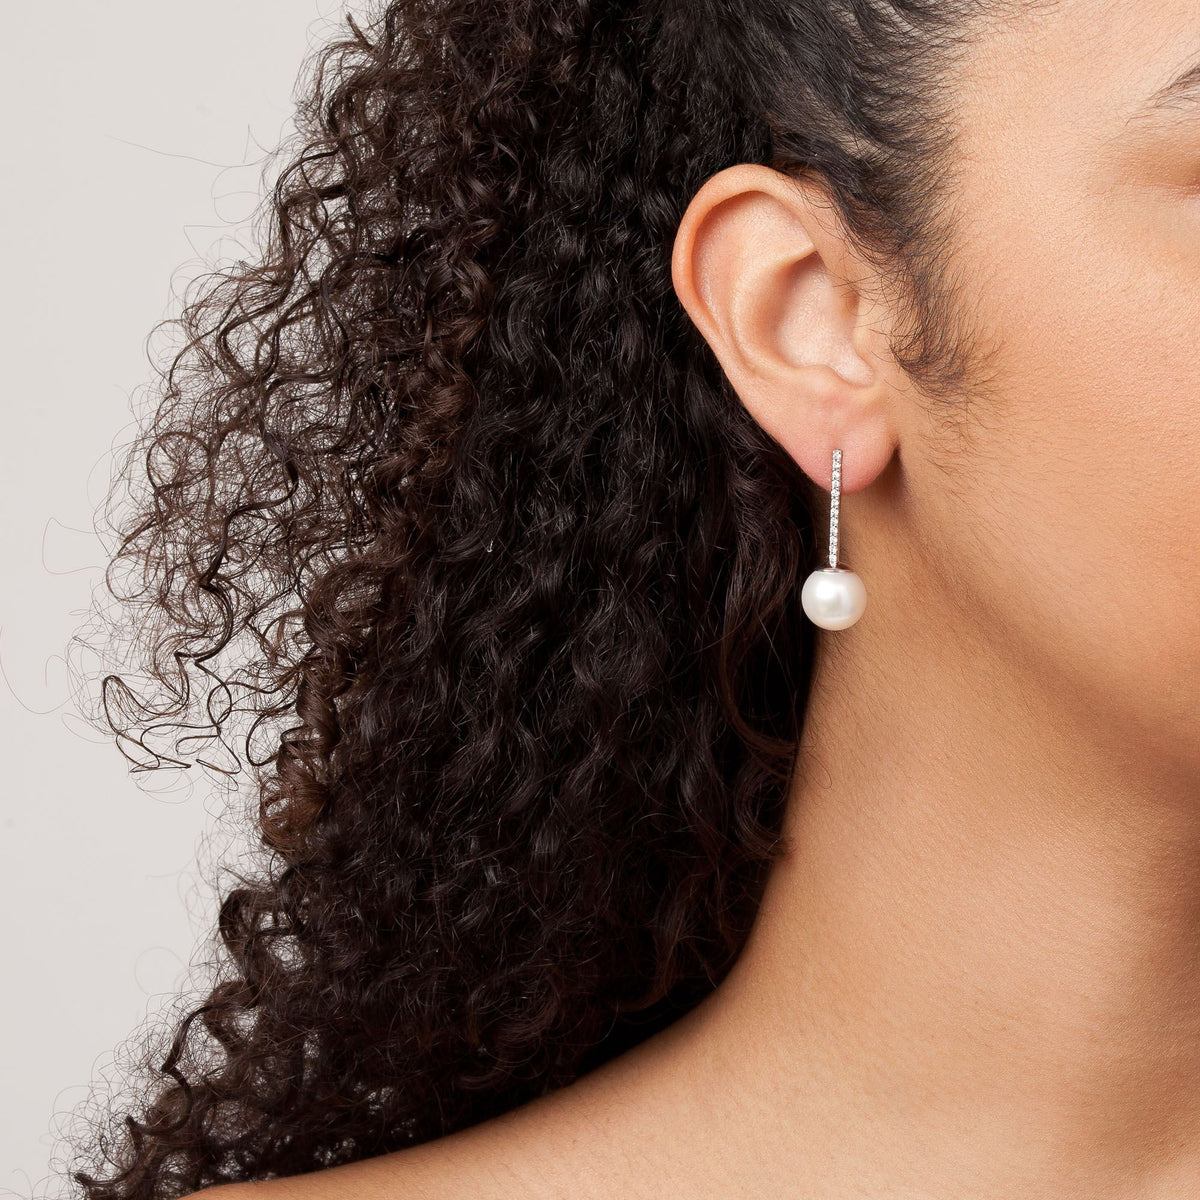 of pearl earrings